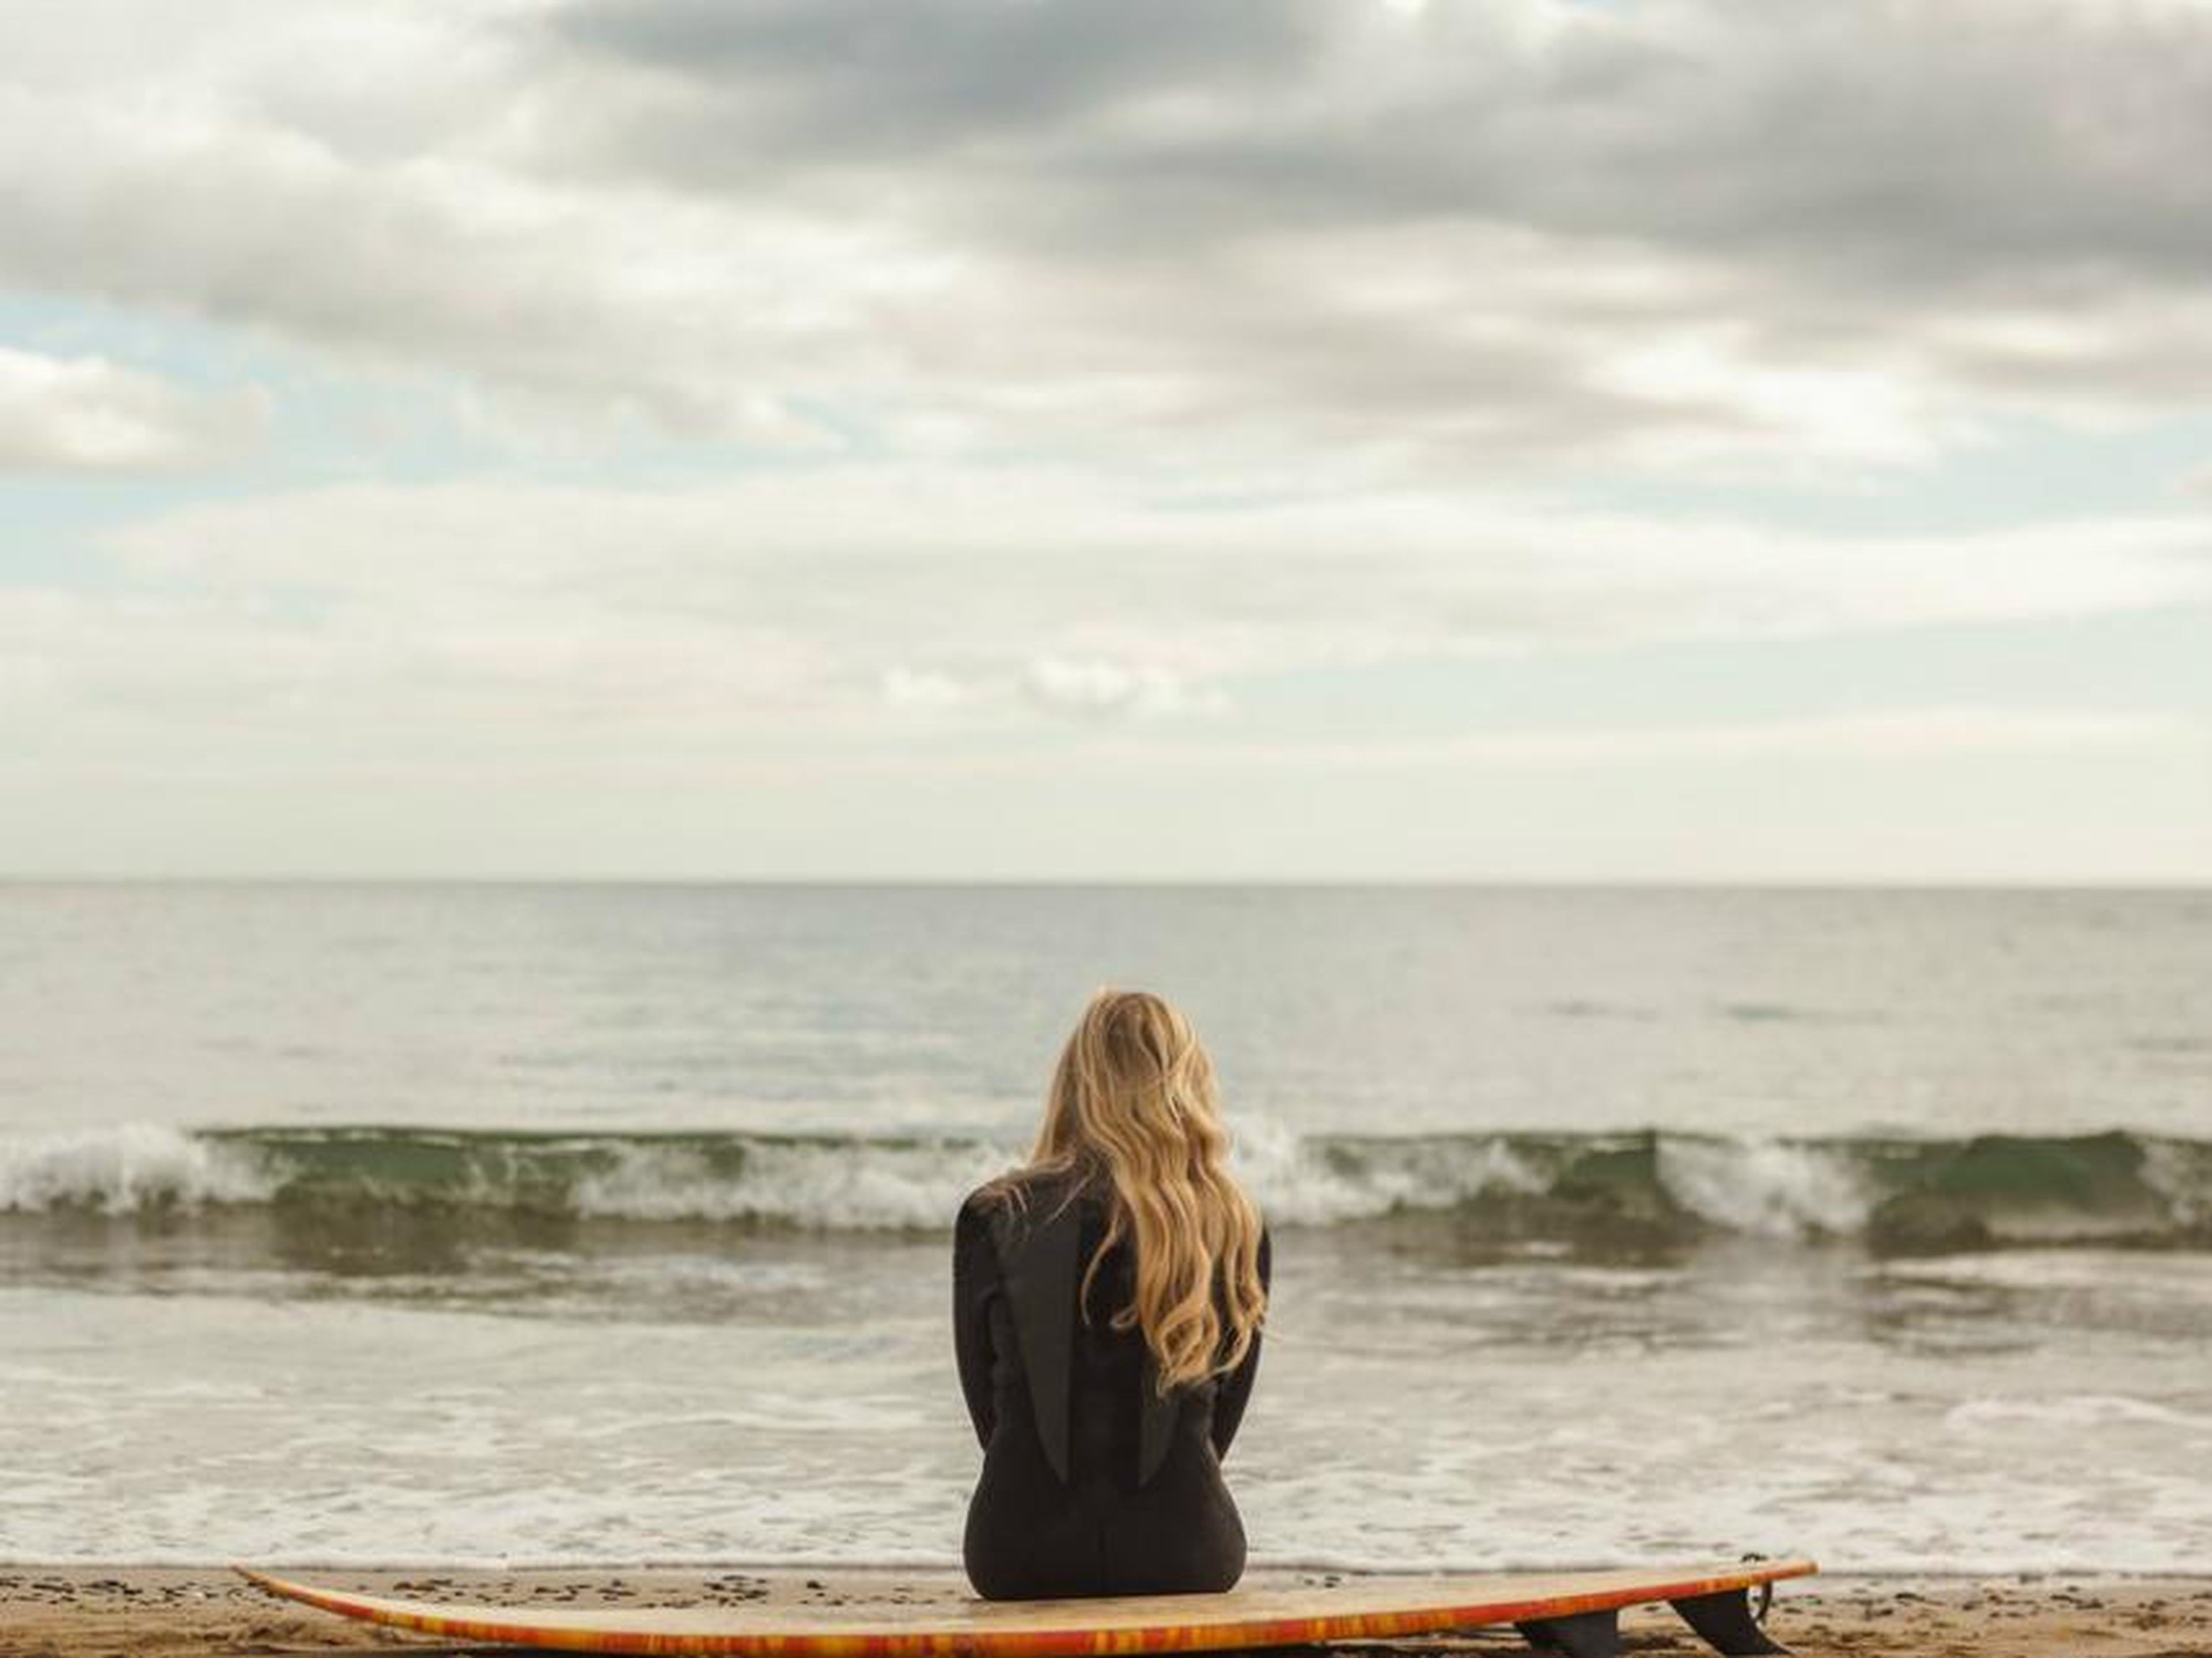 Una mujer surfista mirando al mar